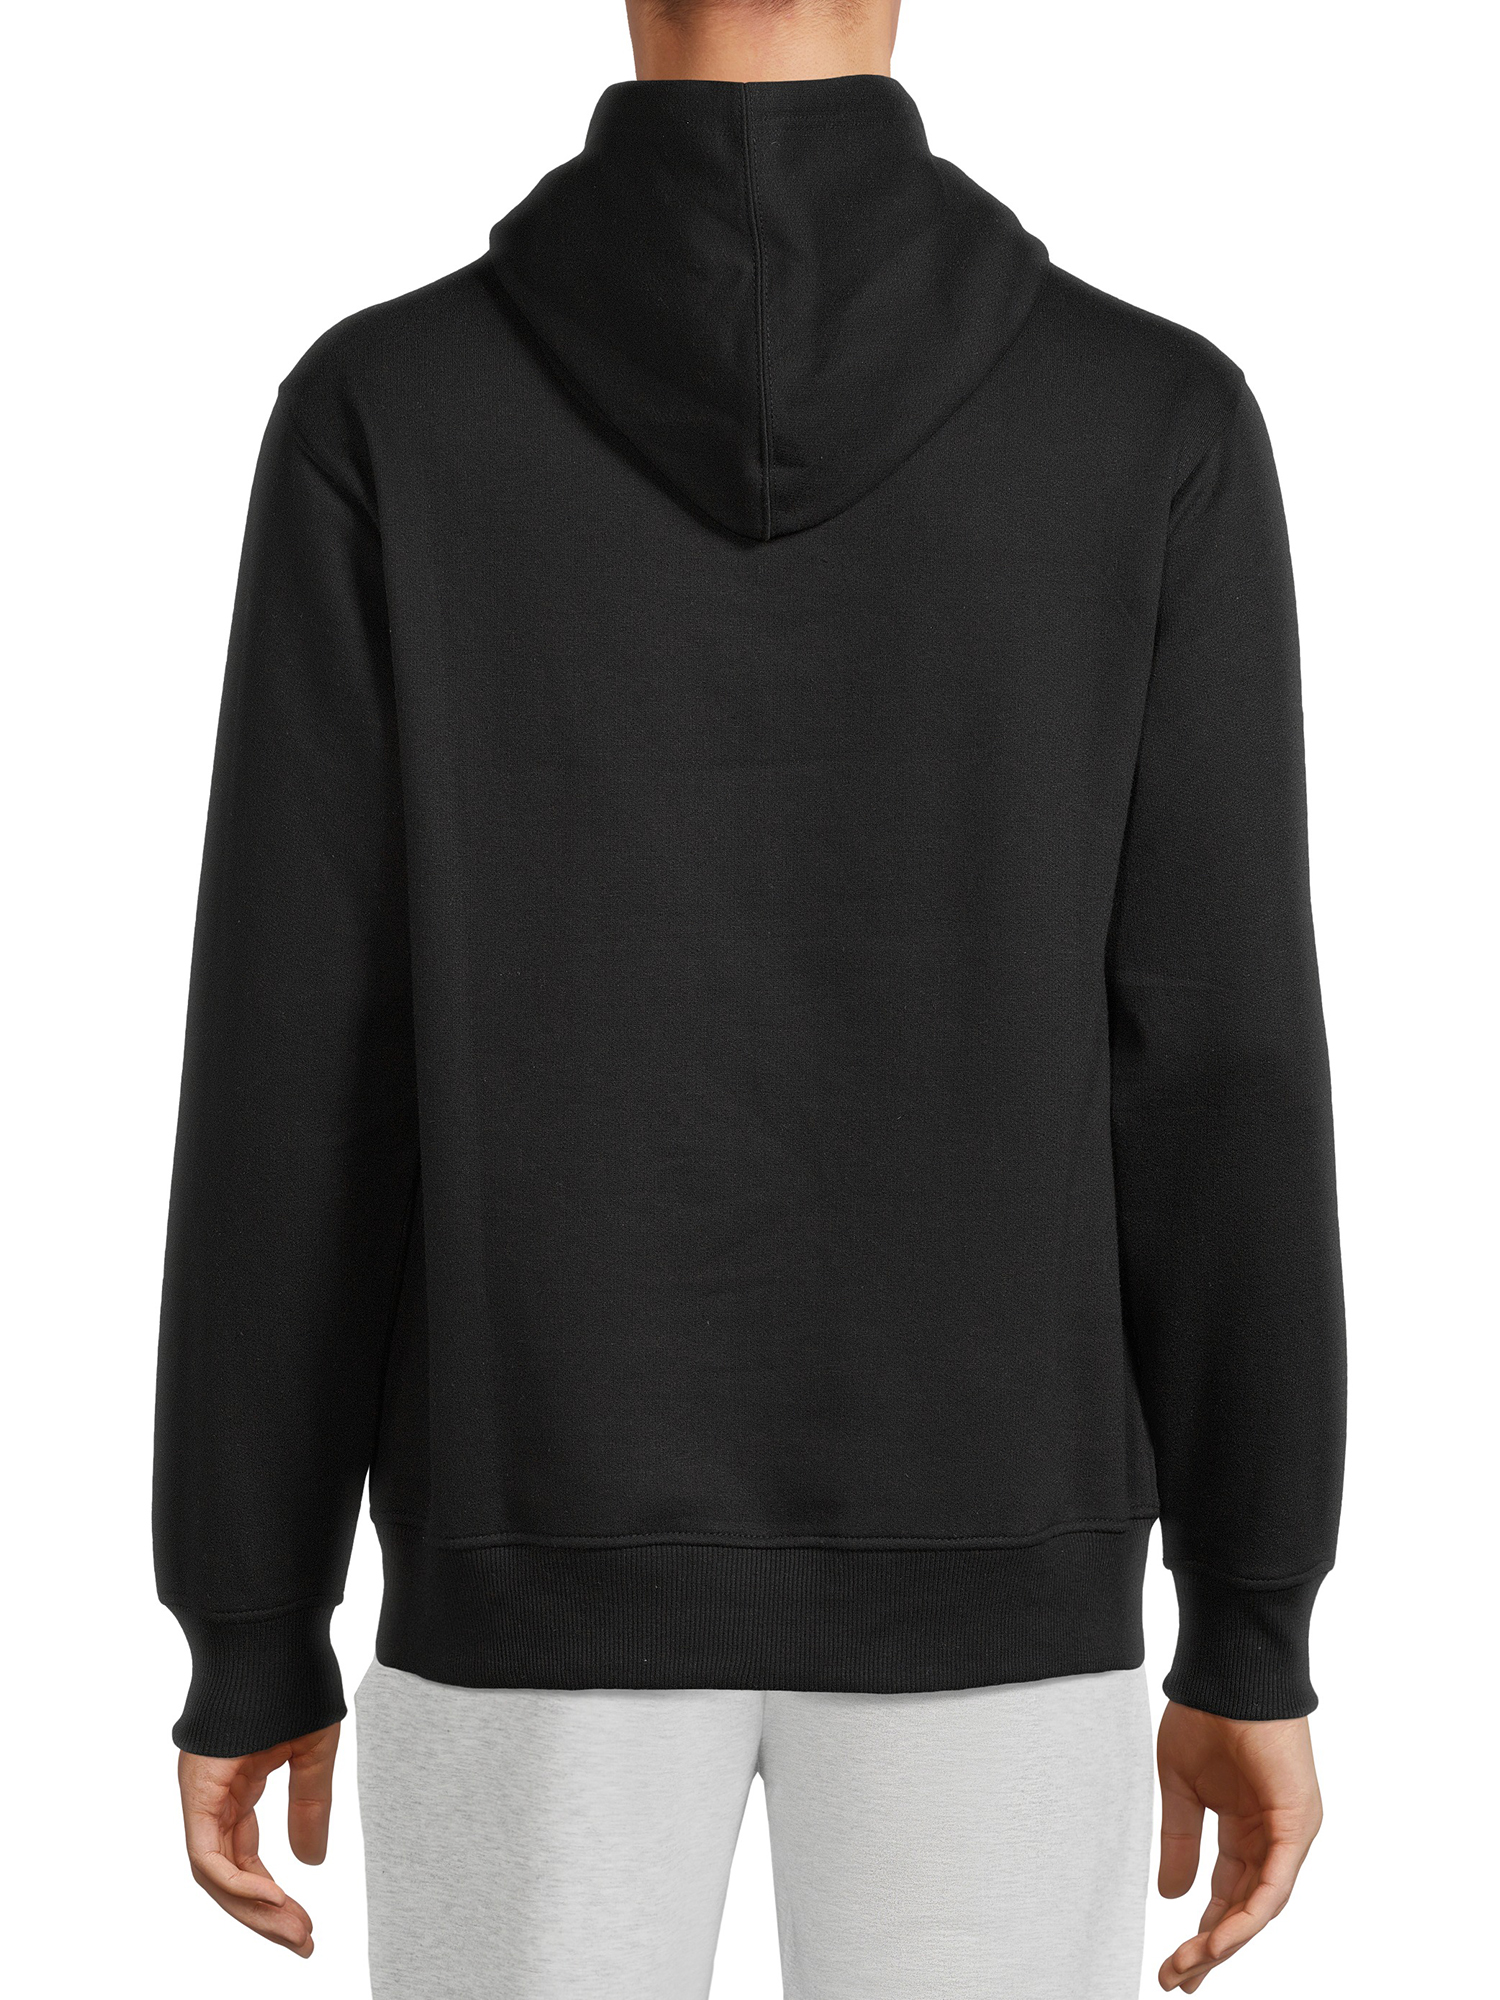 Tony Hawk Men's Skull Logo Pullover Fleece Hoodie Sweatshirt, Sizes S-XL - image 2 of 6